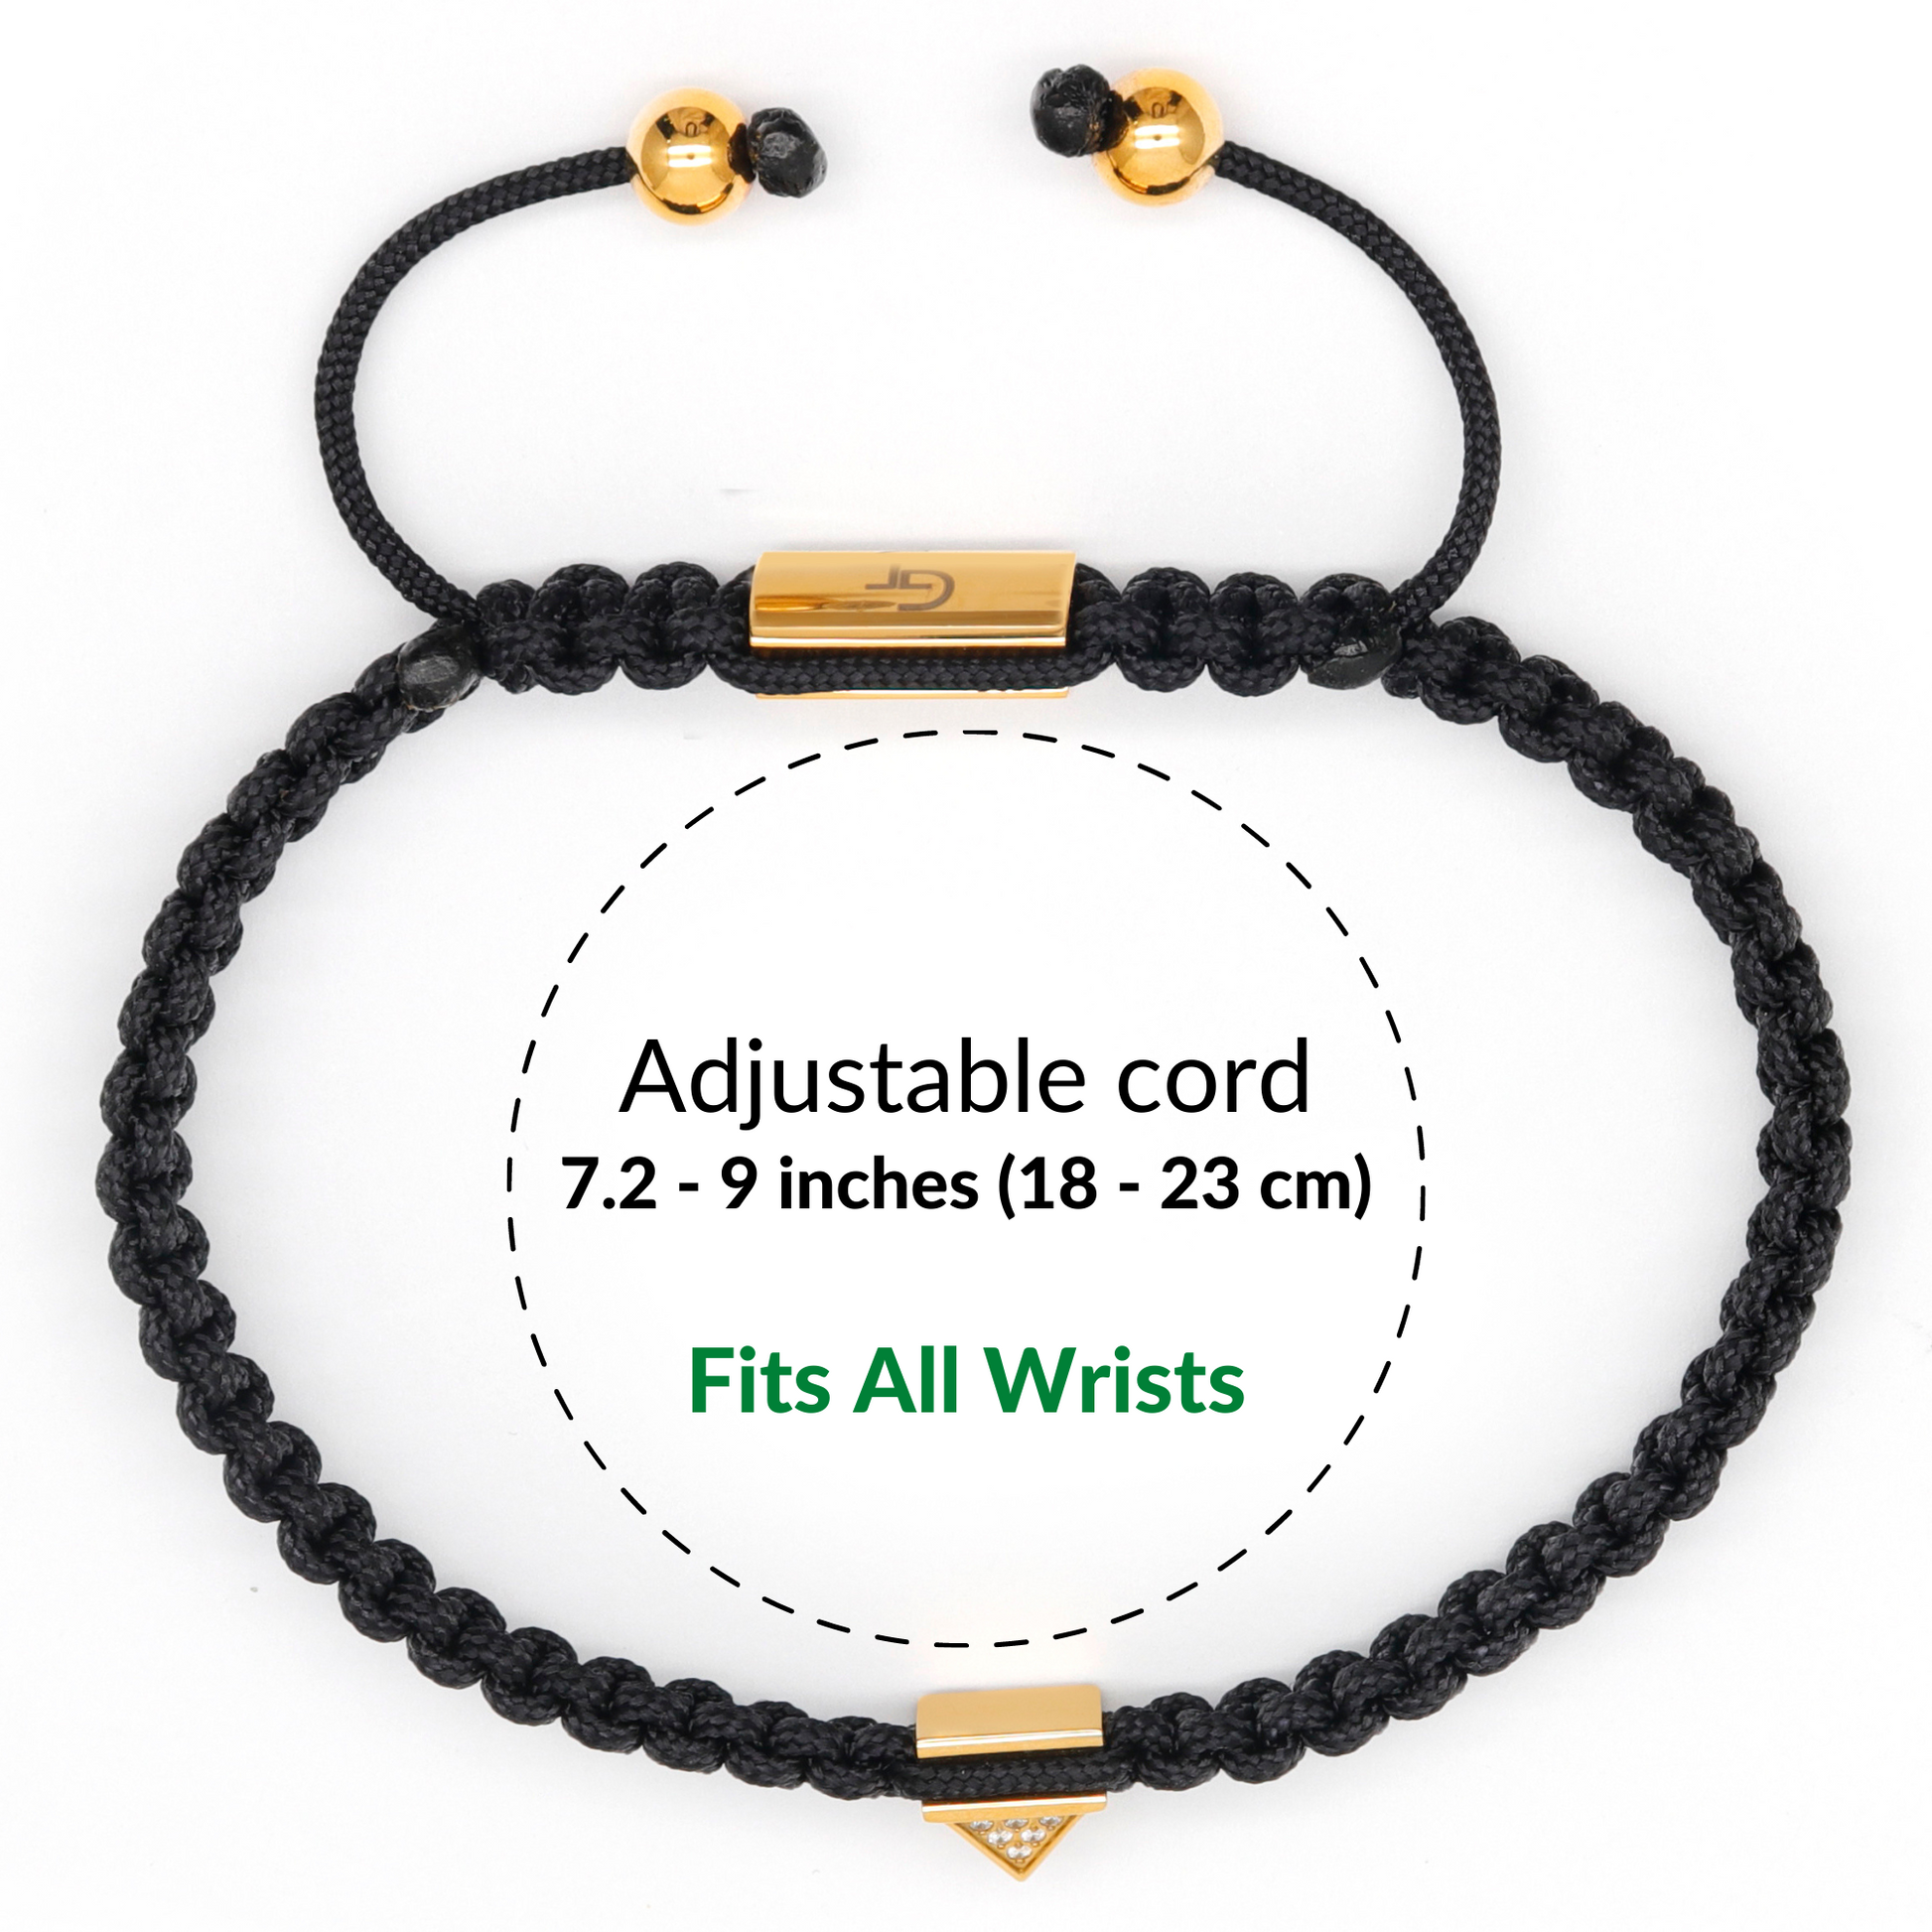 Men's Black String Bracelet with Adjustable Silver Lock